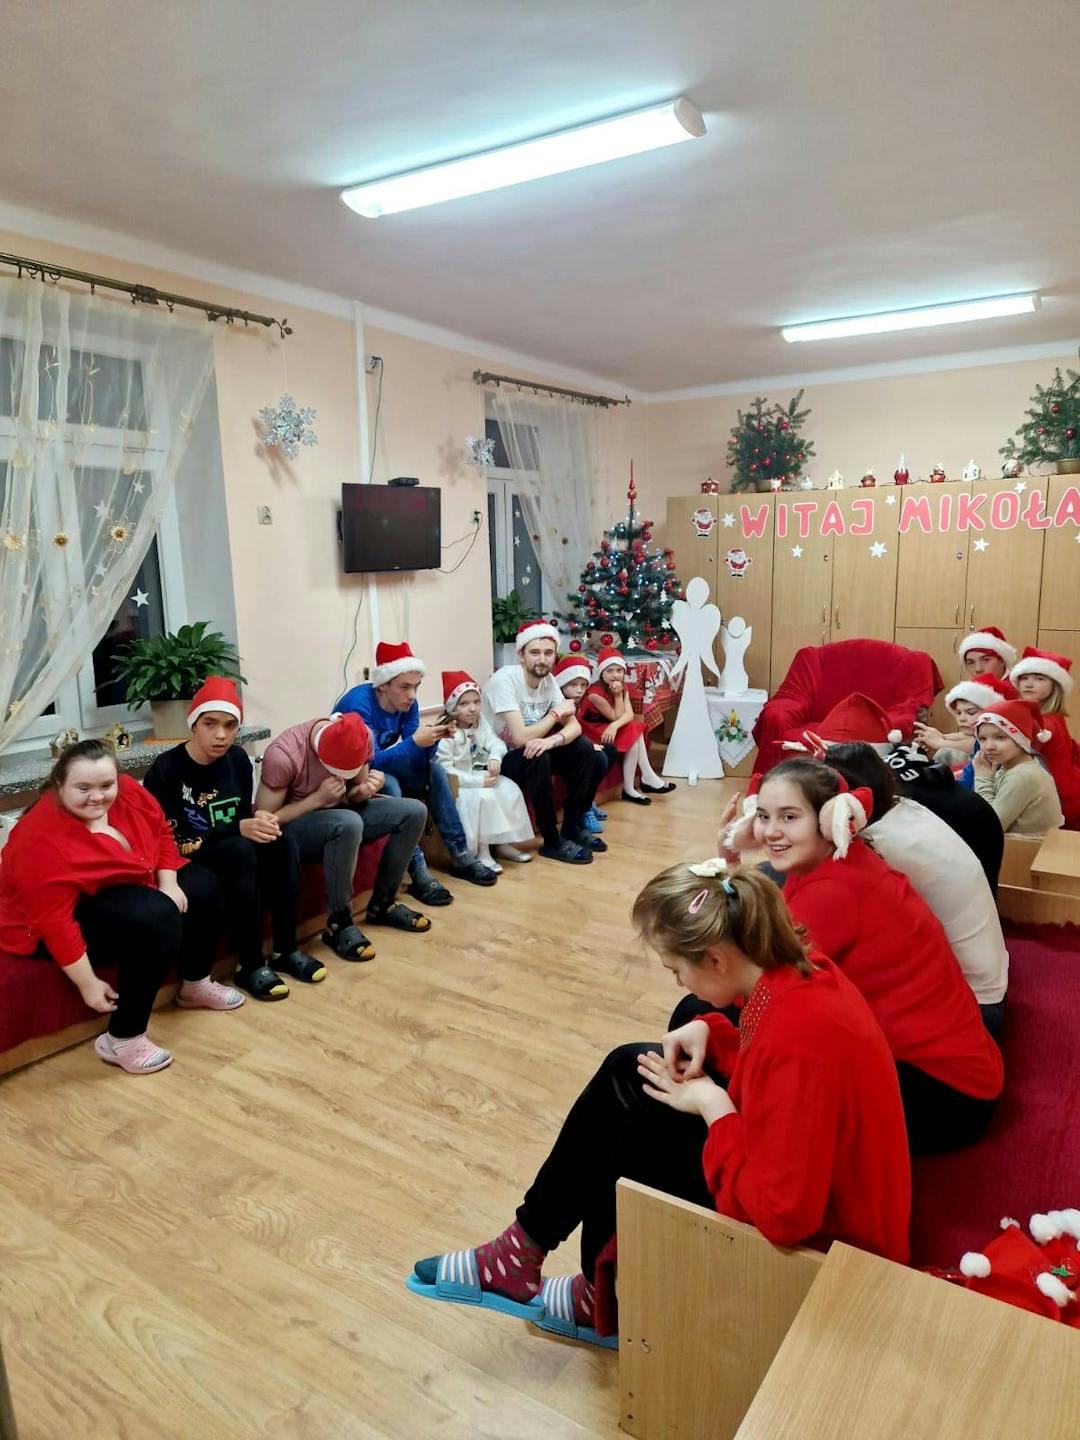 Niezapomniane spotkanie z Mikołajem! | Wychowankowie internatu czekają na Mikolaja.jpg